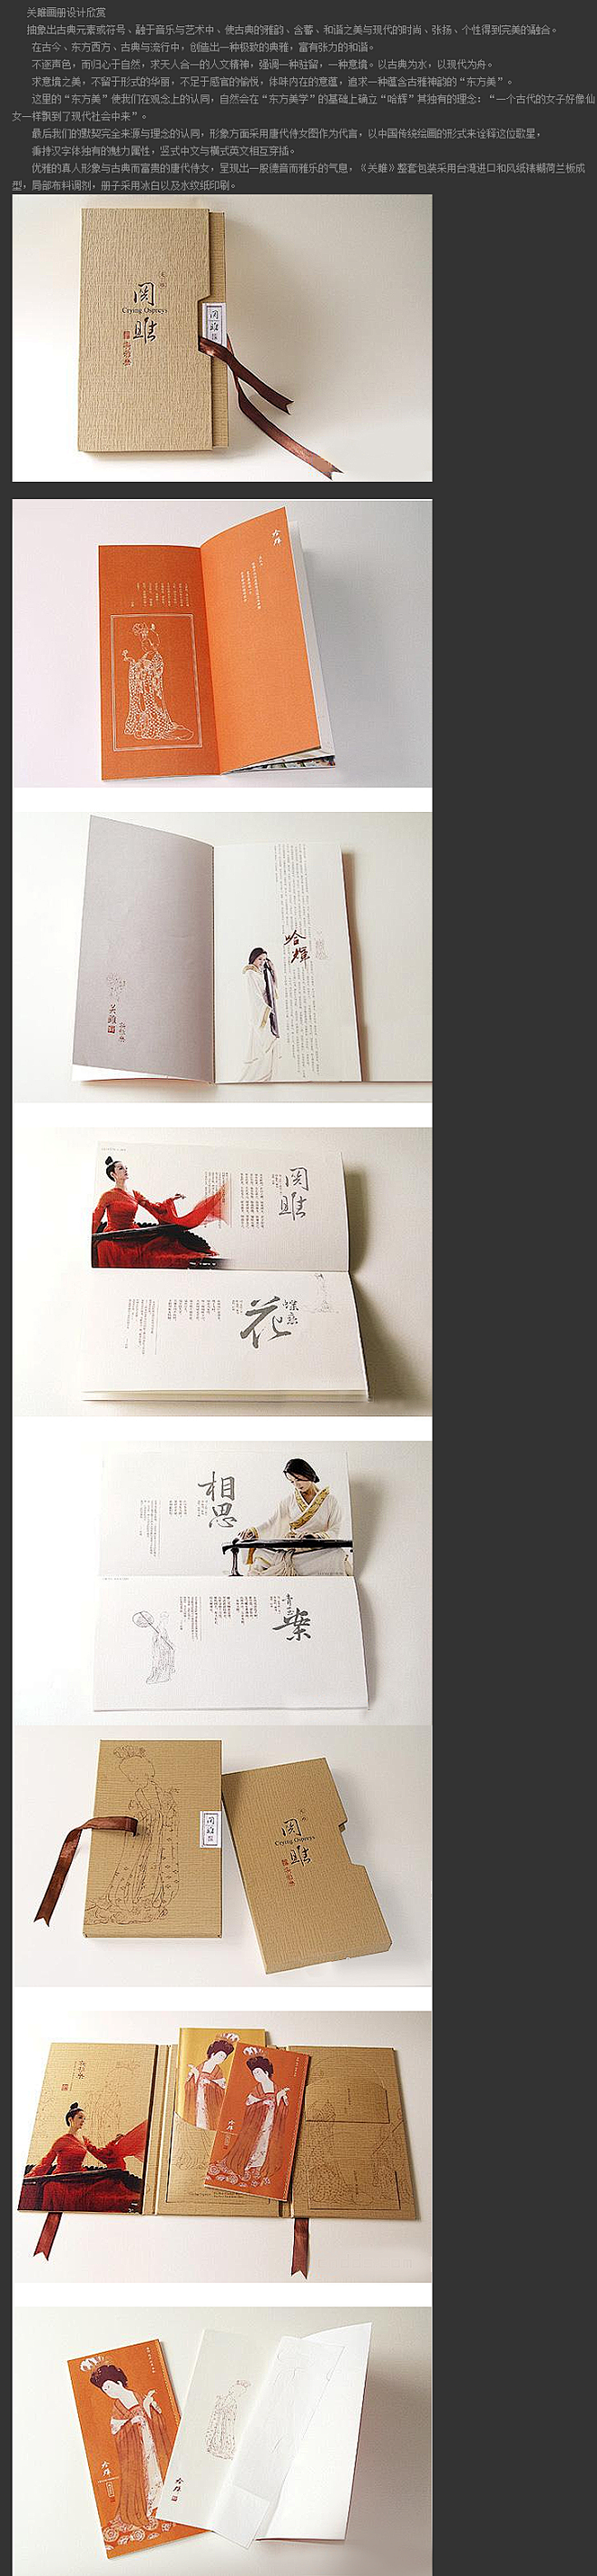 画册设计网中国画册设计网  封面设计 最...